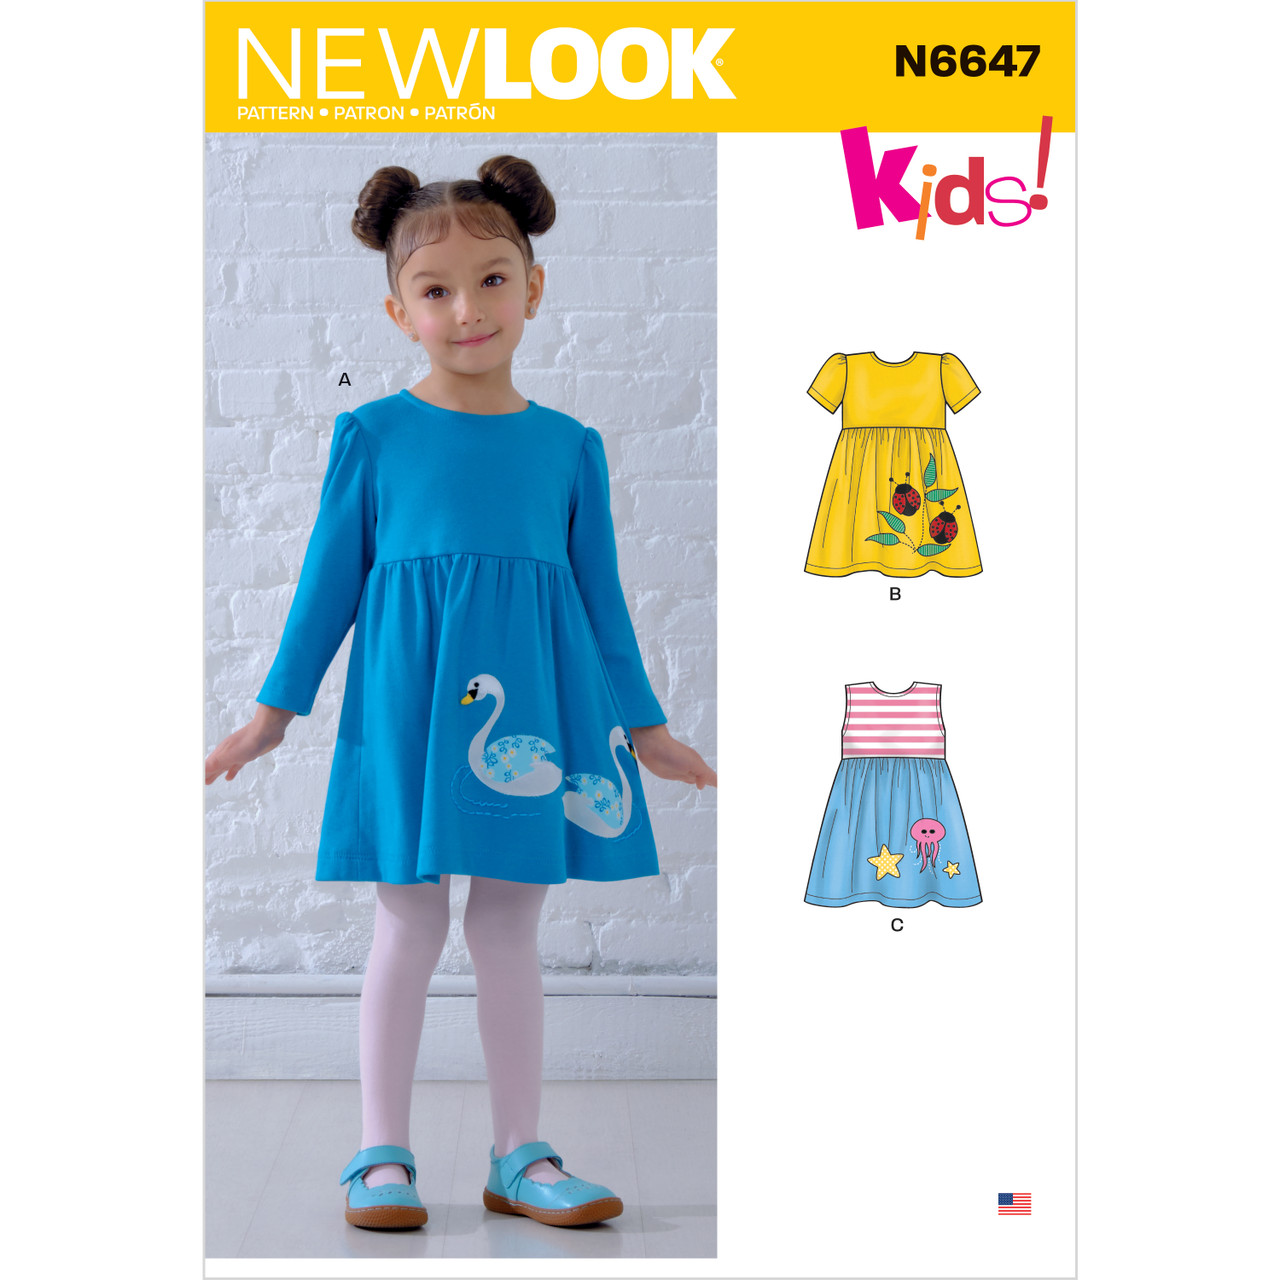 New Look N6647 Barne Kjole Med Applikasjoner